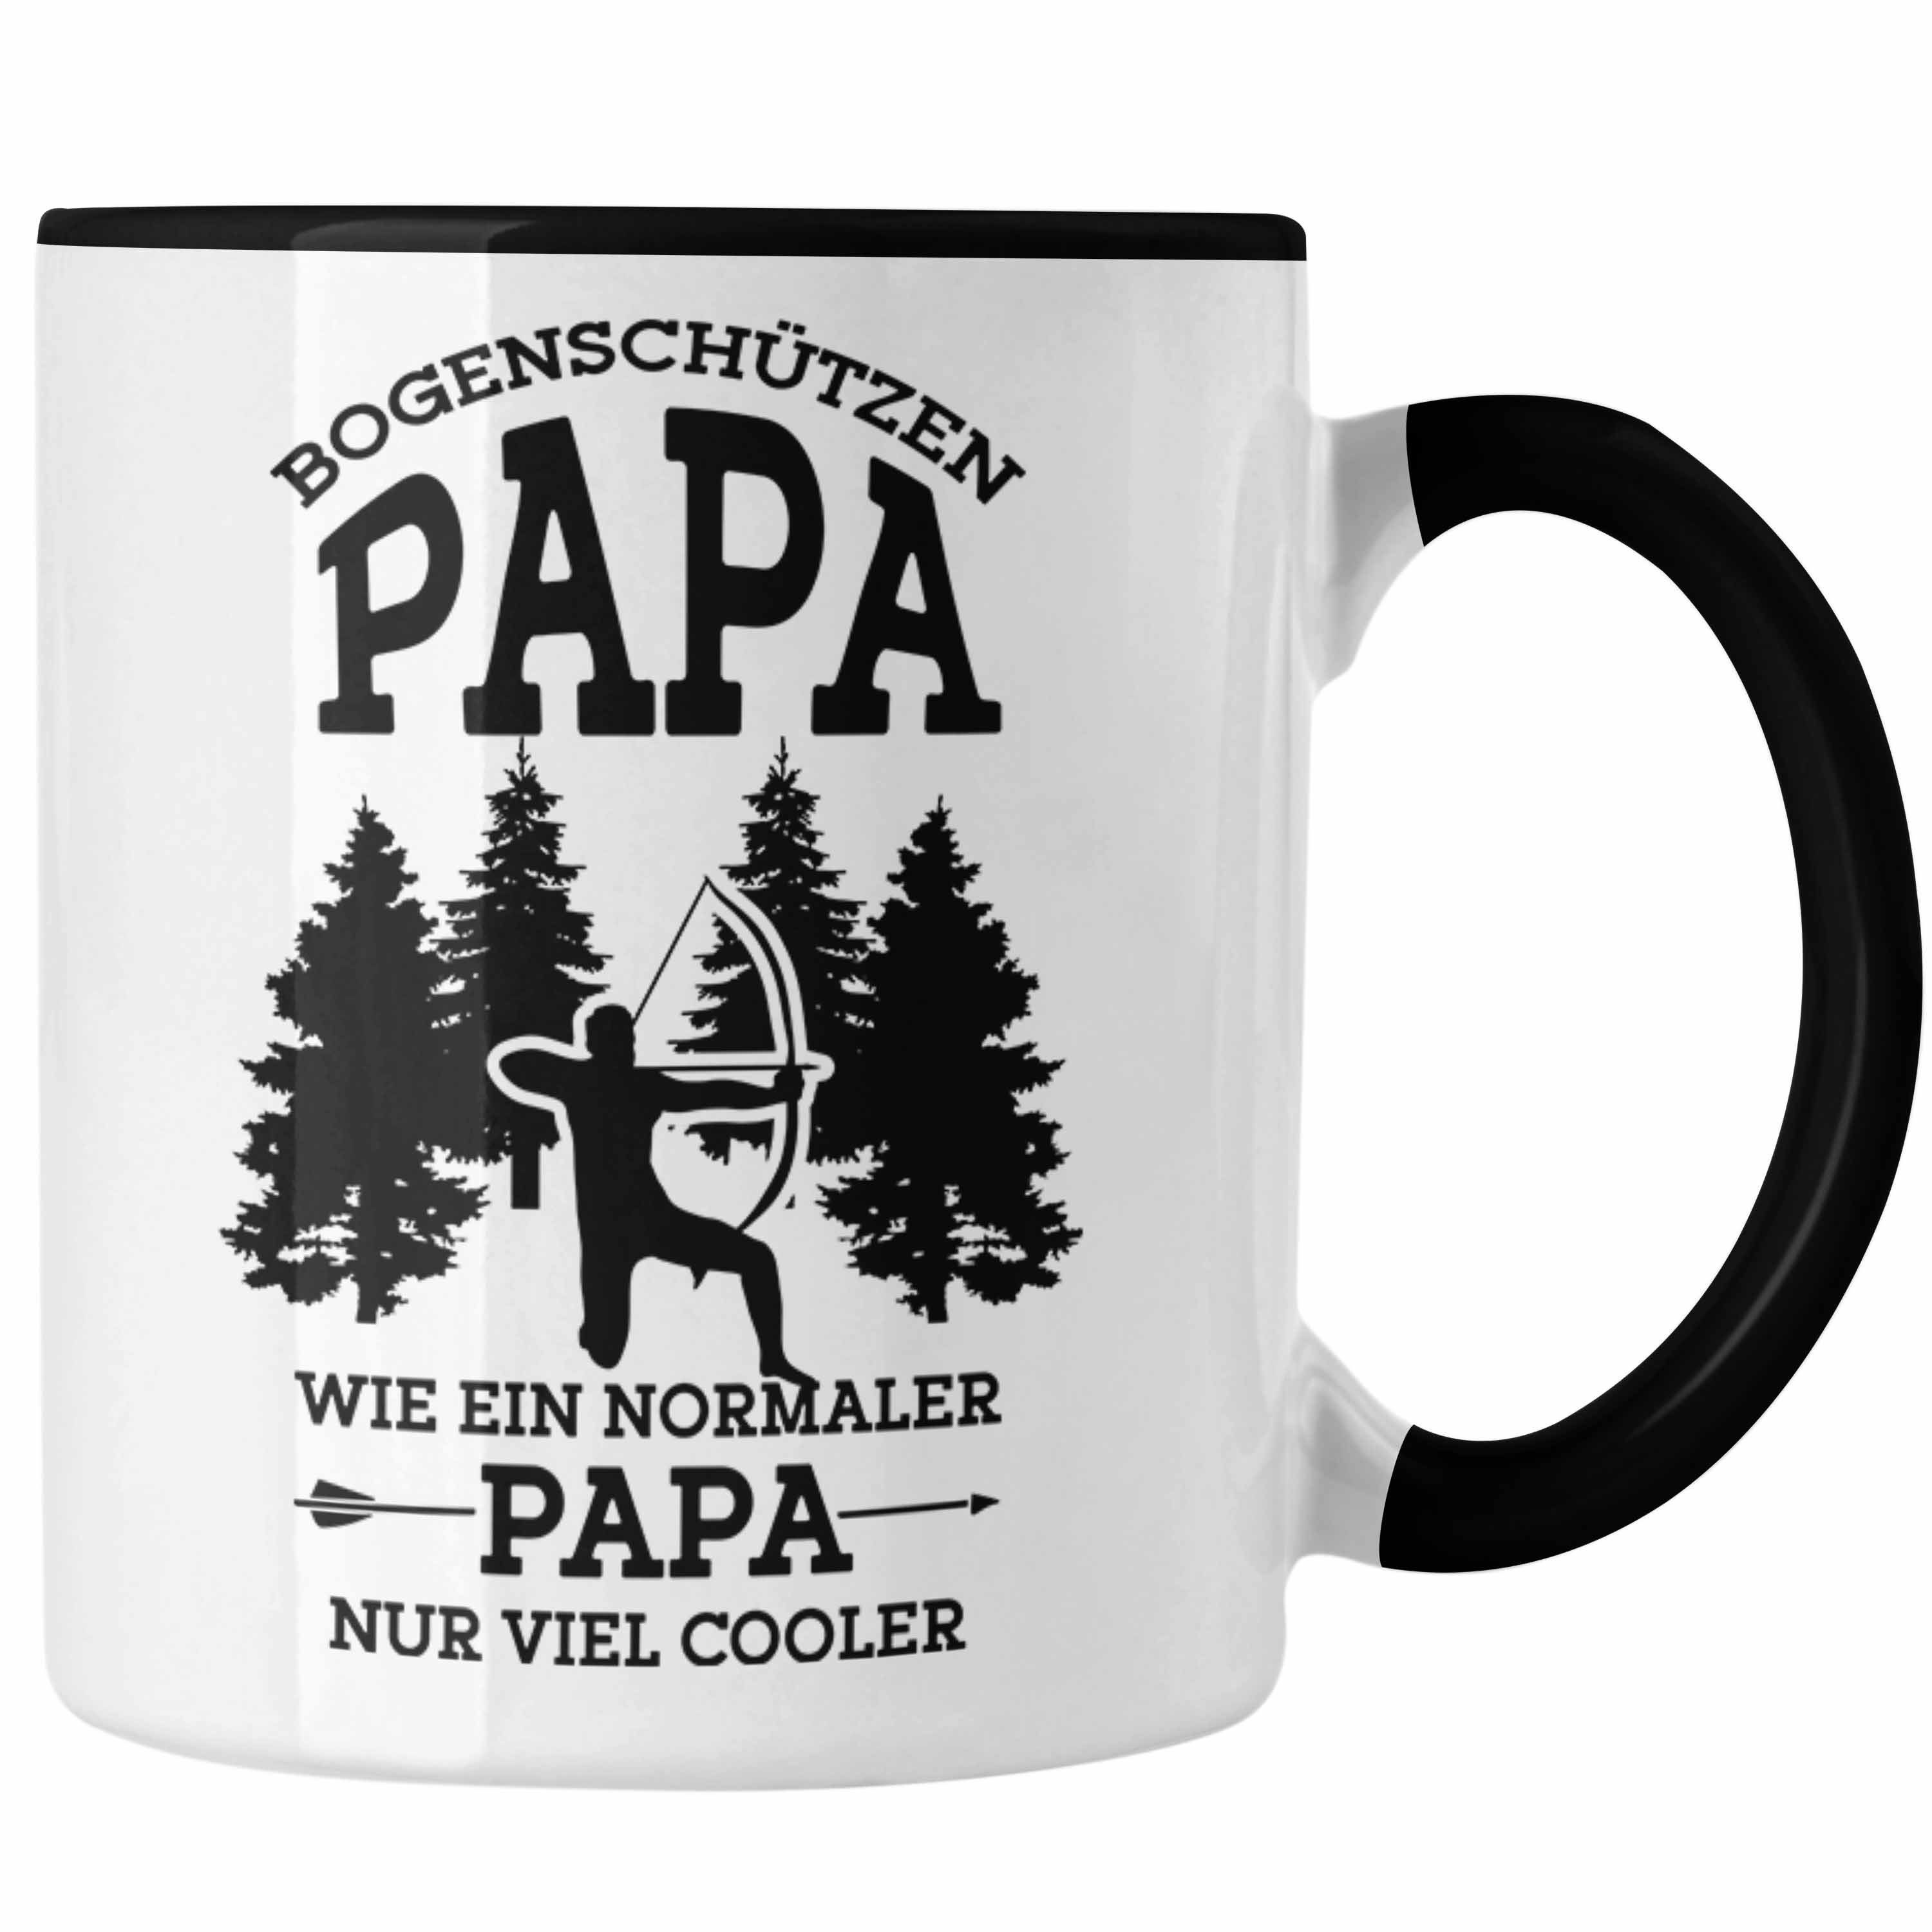 Trendation Tasse Lustige Bogenschießen Tasse für Papa Bogenschütze Geschenkidee Vatert Schwarz